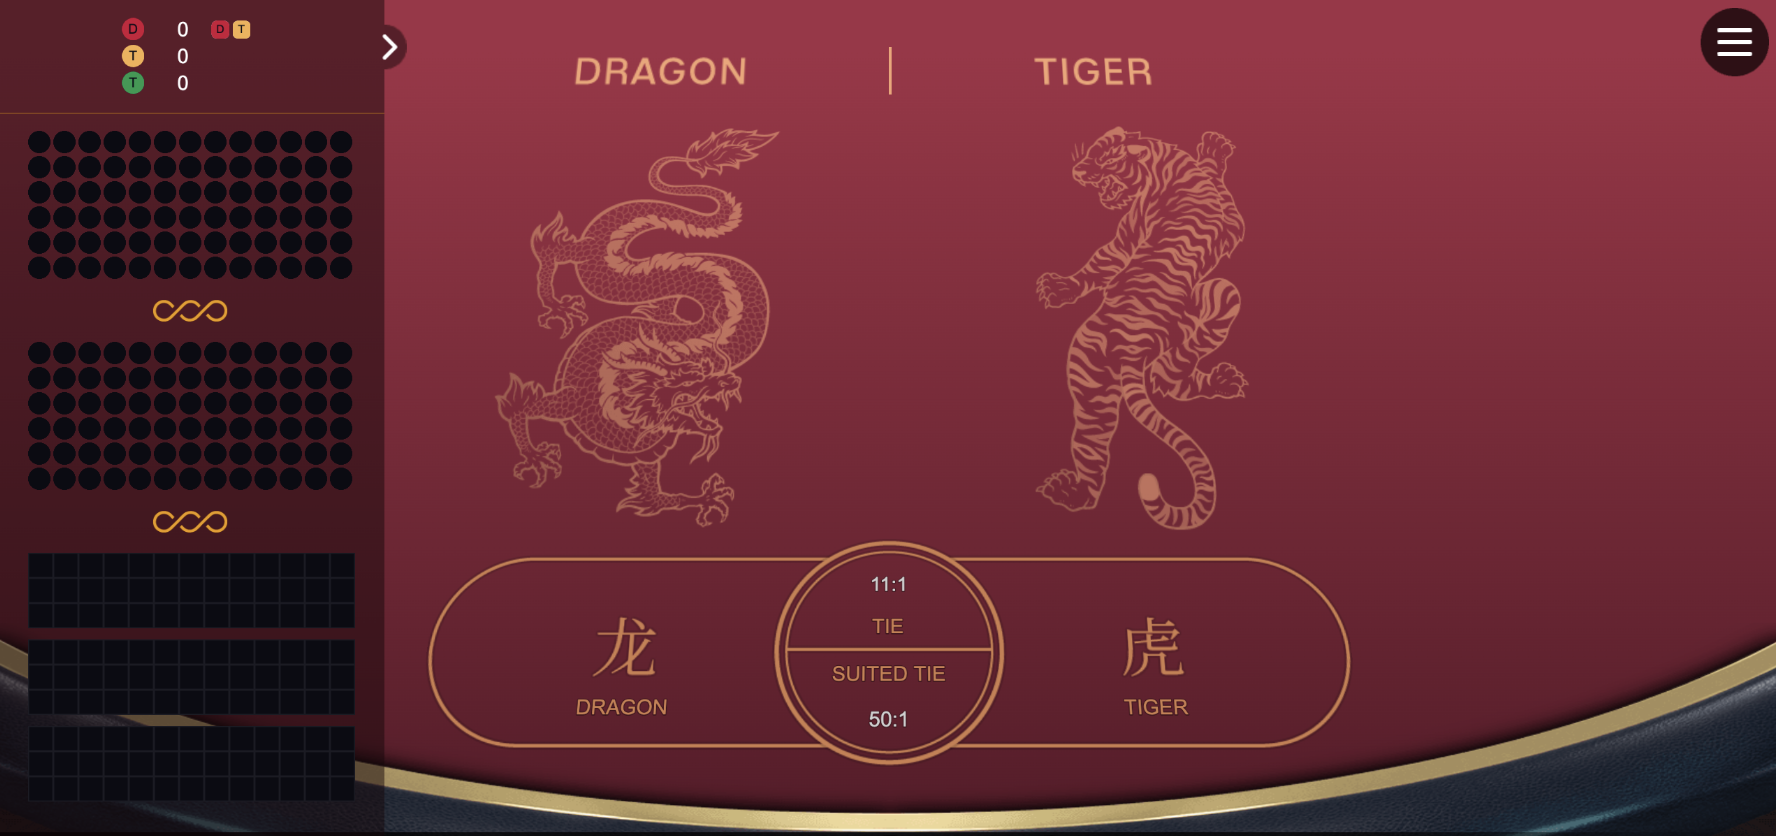 dragon tiger como jogar